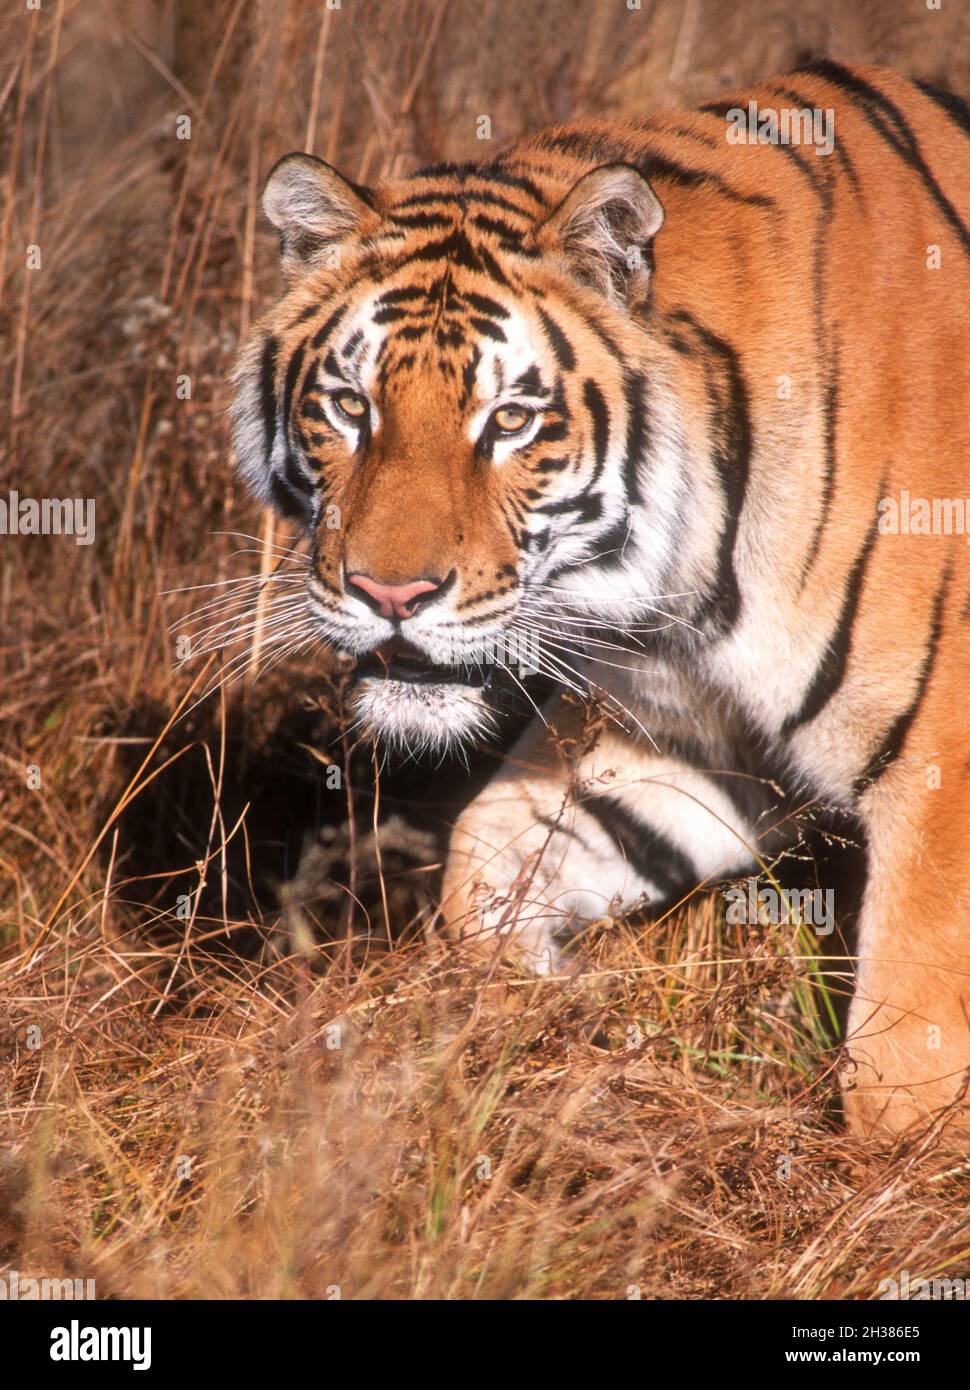 Asia; Southeast Asia; India;  Wildlife; Predators; Felines; Tiger; Panthera tigris; Captive in rescue center. Stock Photo